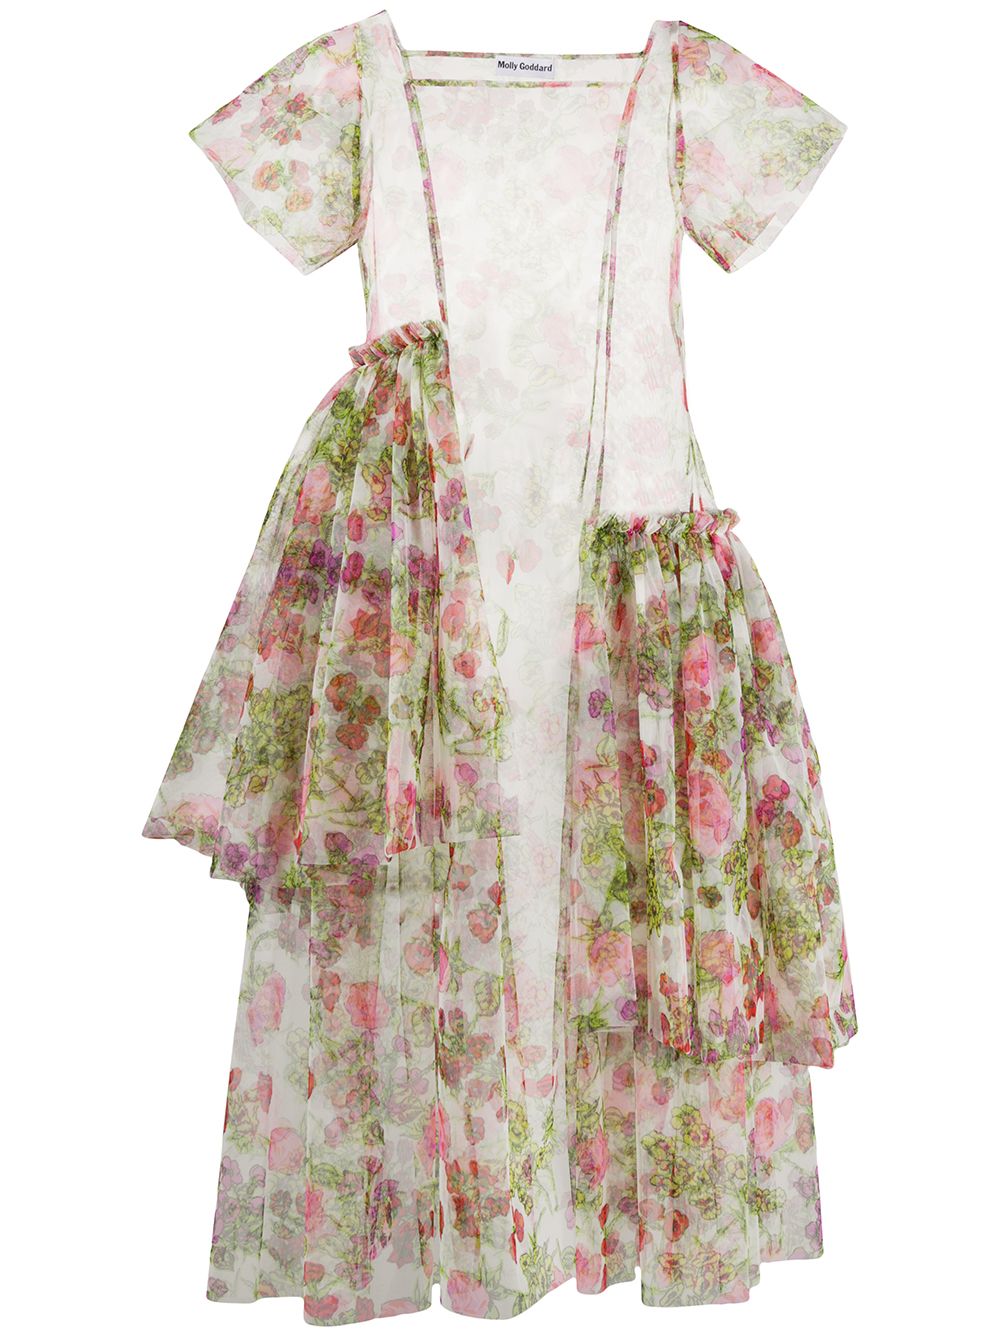 фото Molly goddard прозрачное многослойное платье с цветочным принтом